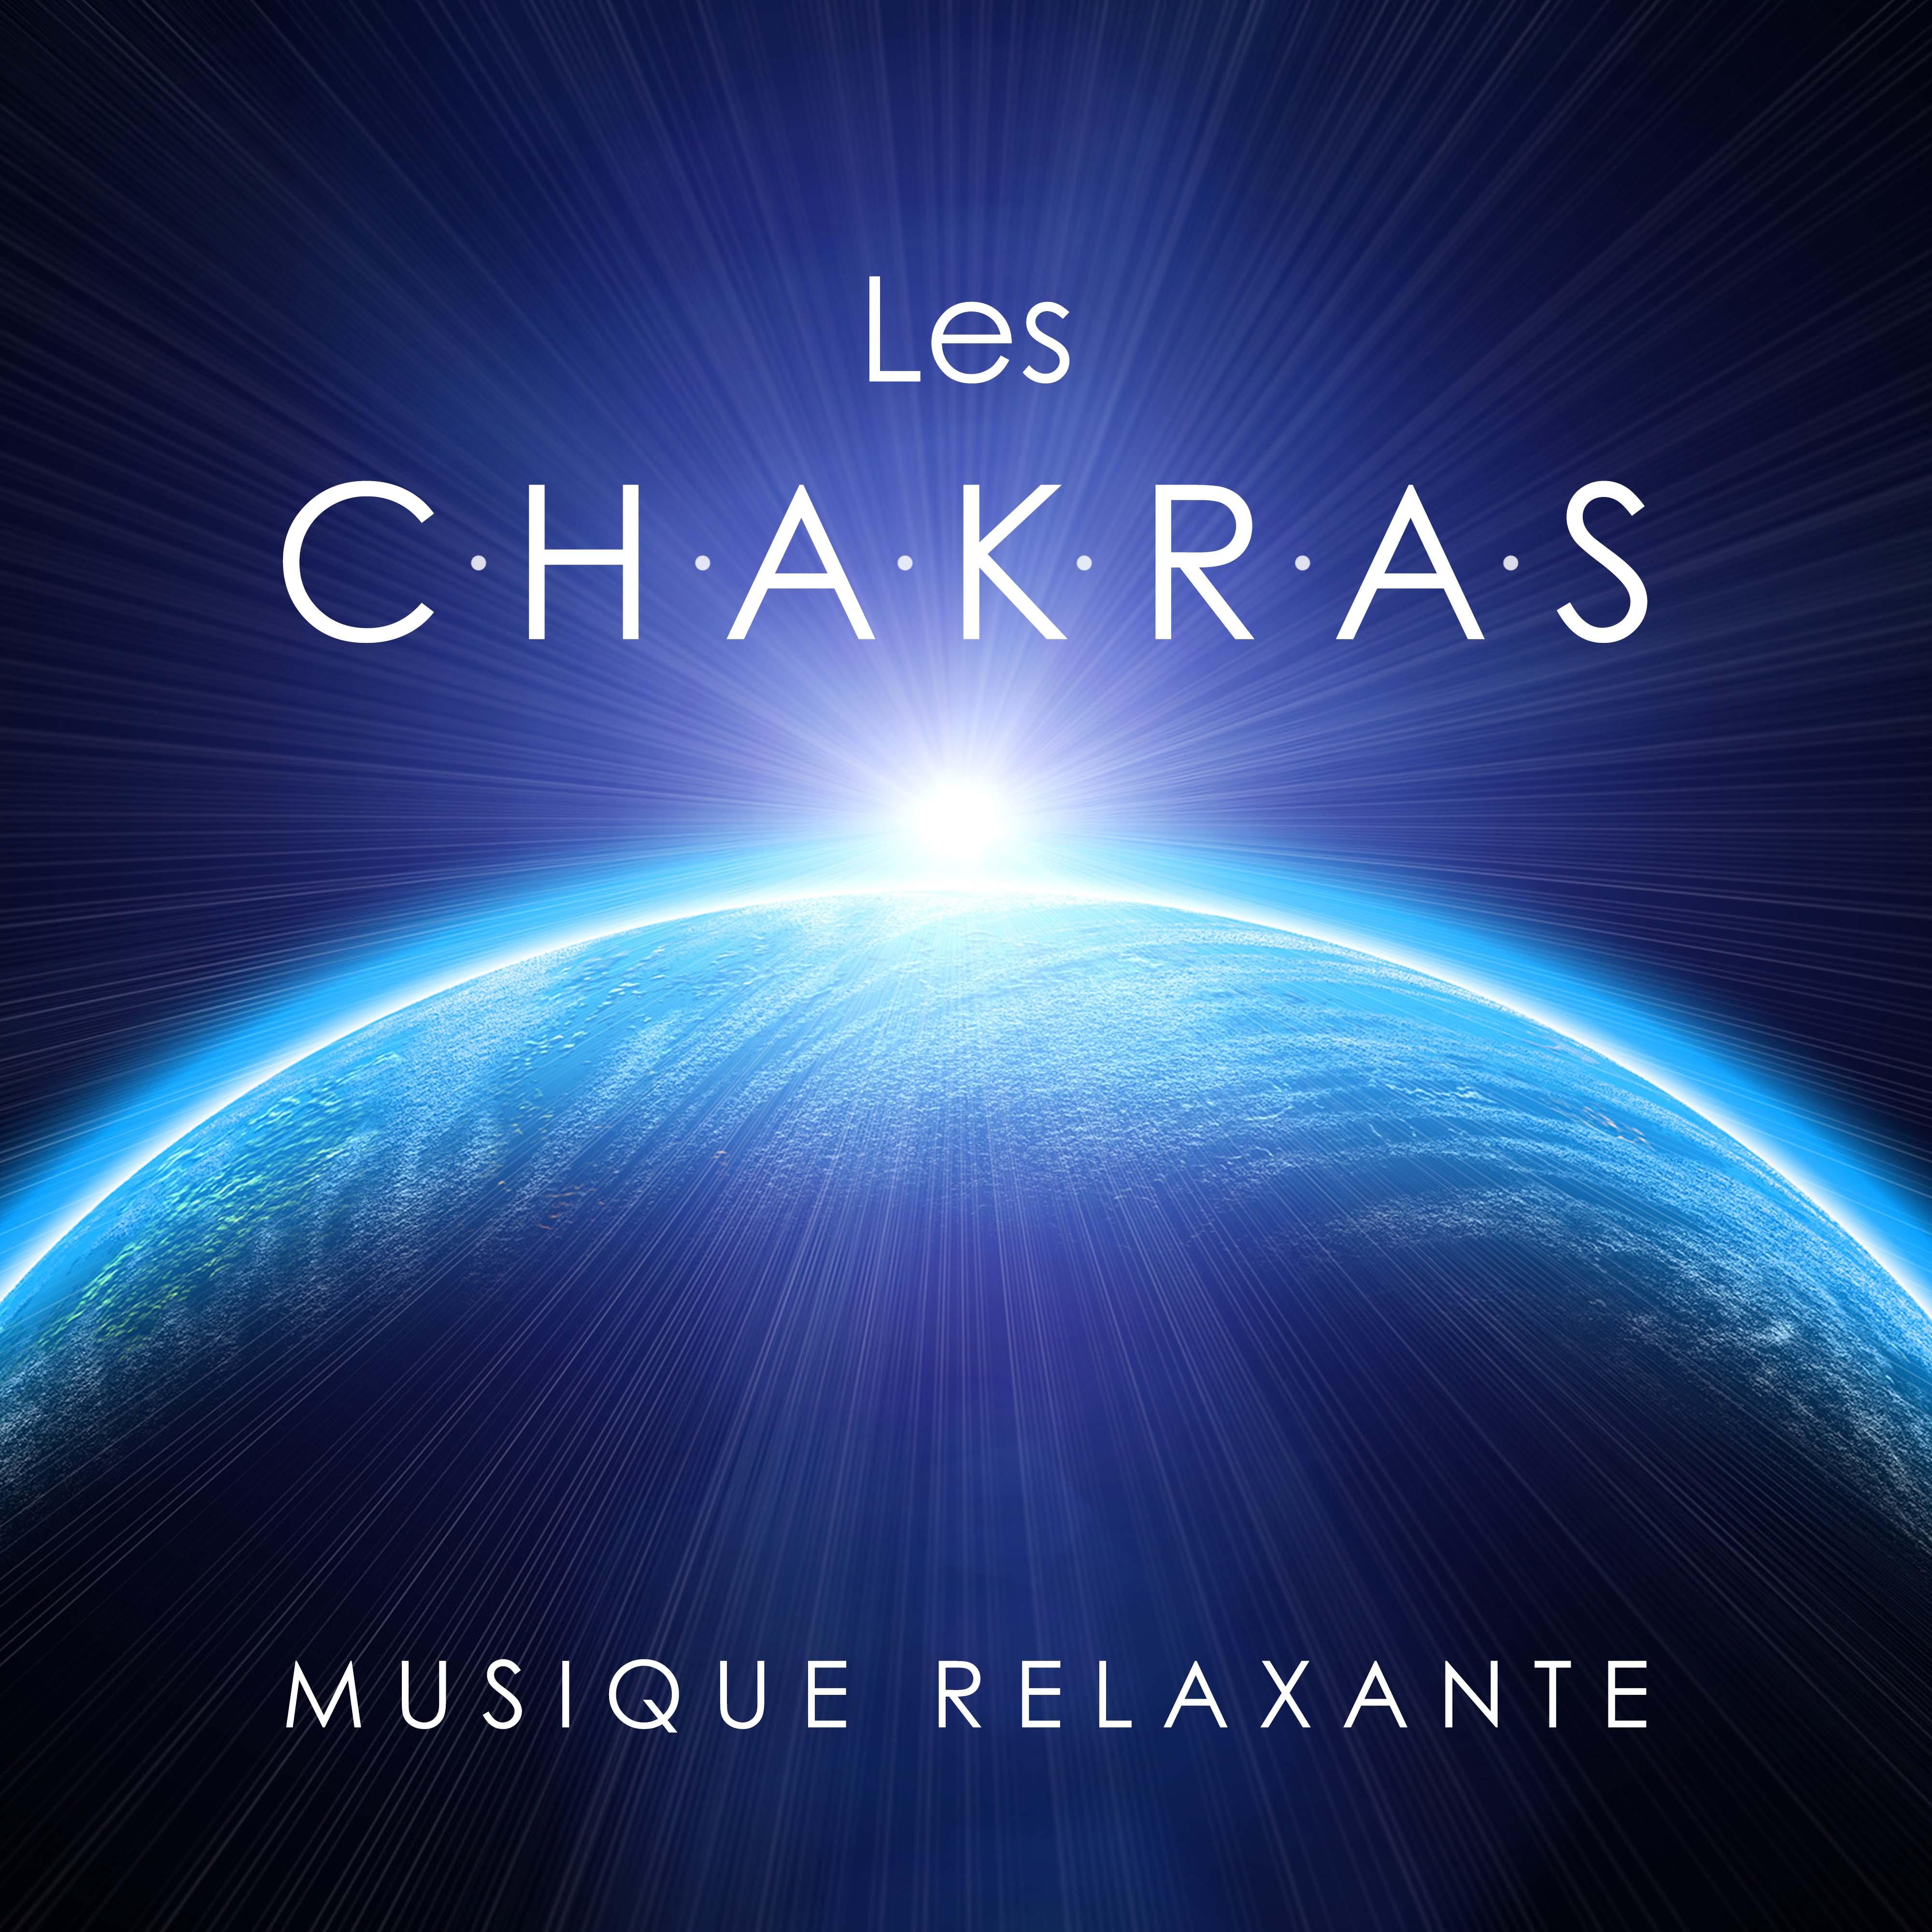 Les Chakras - Musique Relaxante